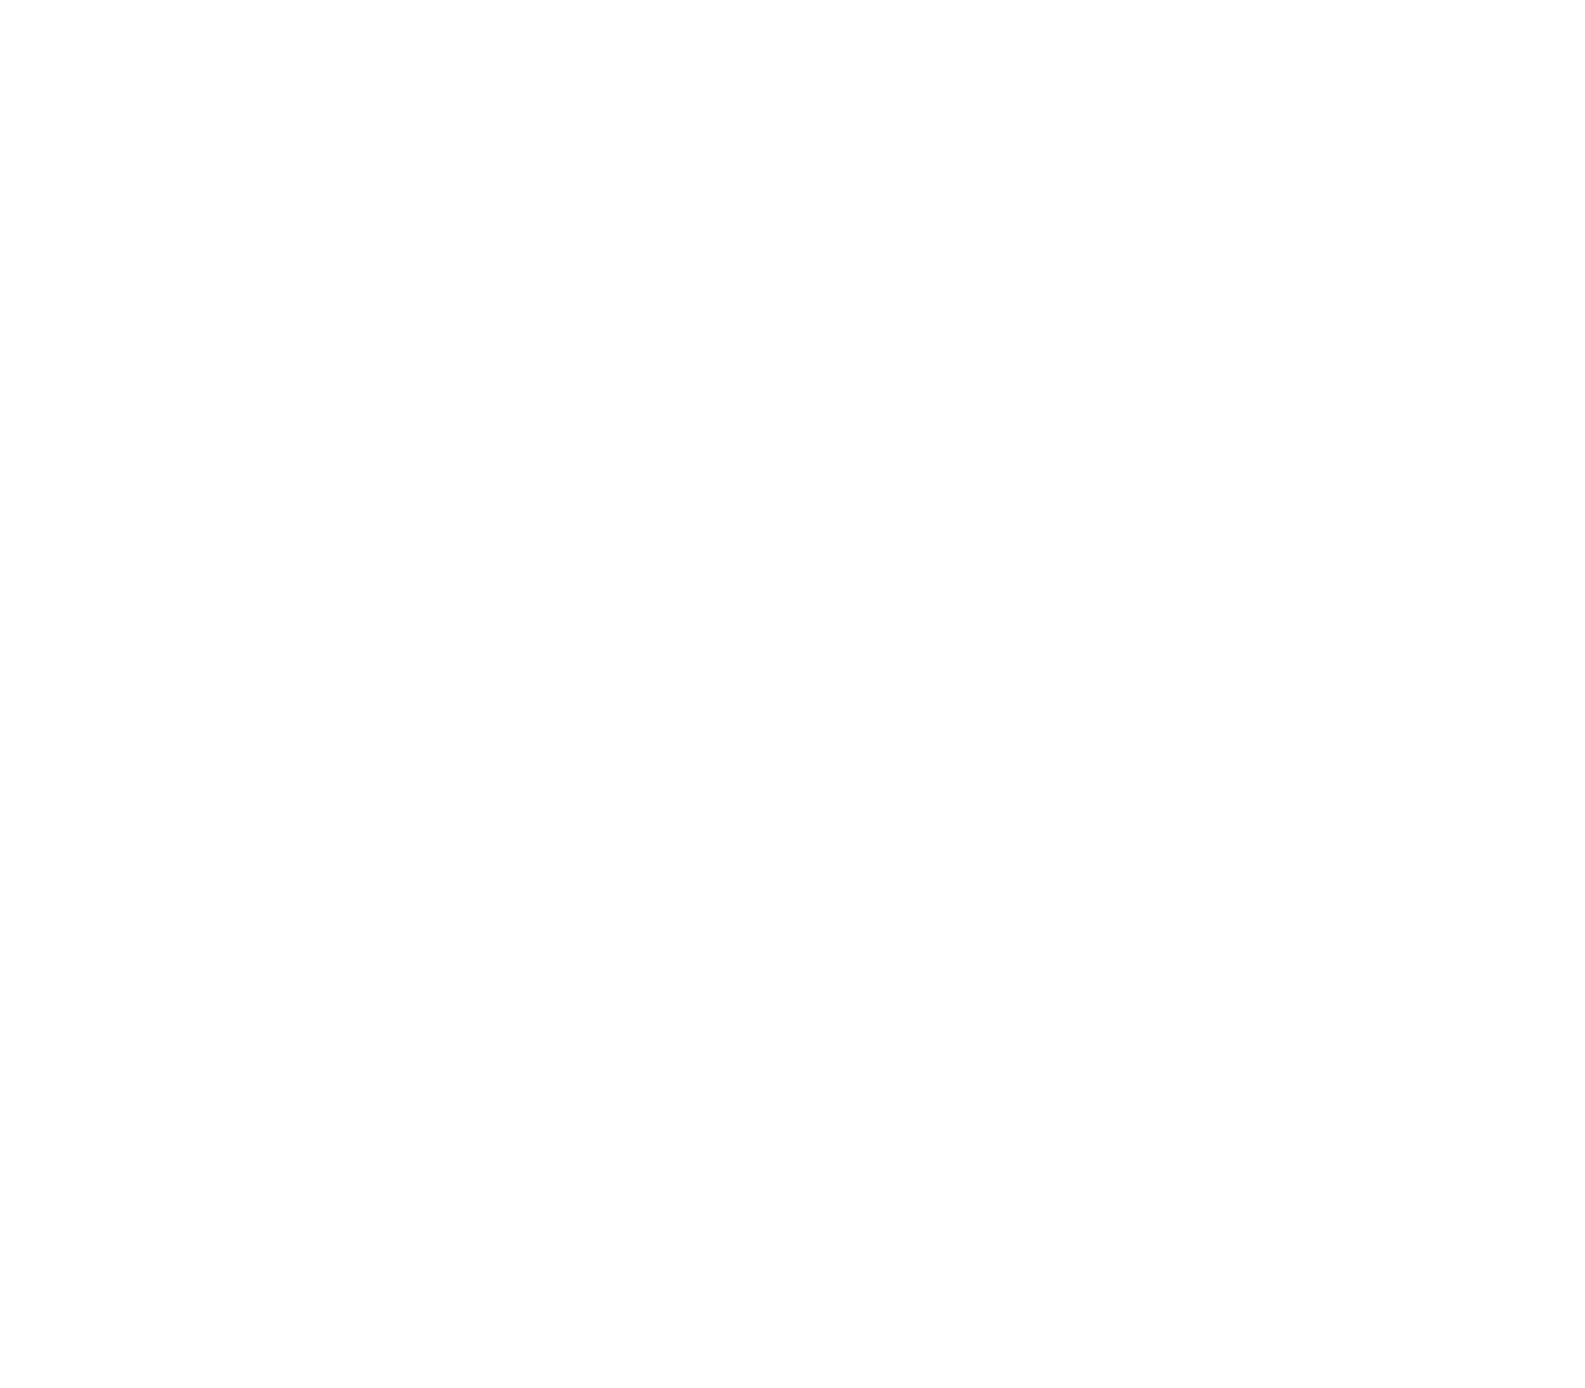 TransMedics Group logo for dark backgrounds (transparent PNG)